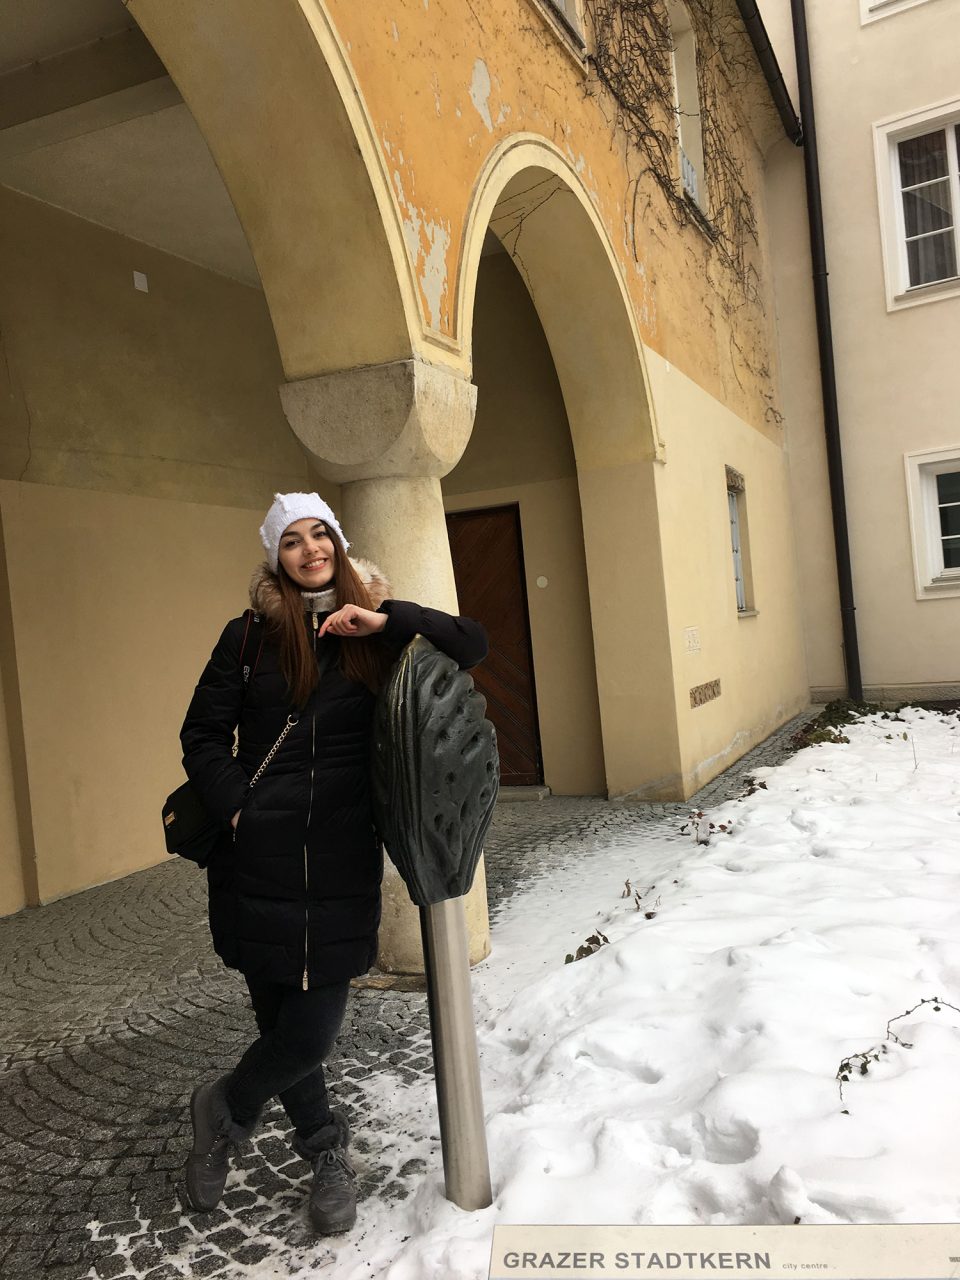 Dorie am Stadtkern von Graz